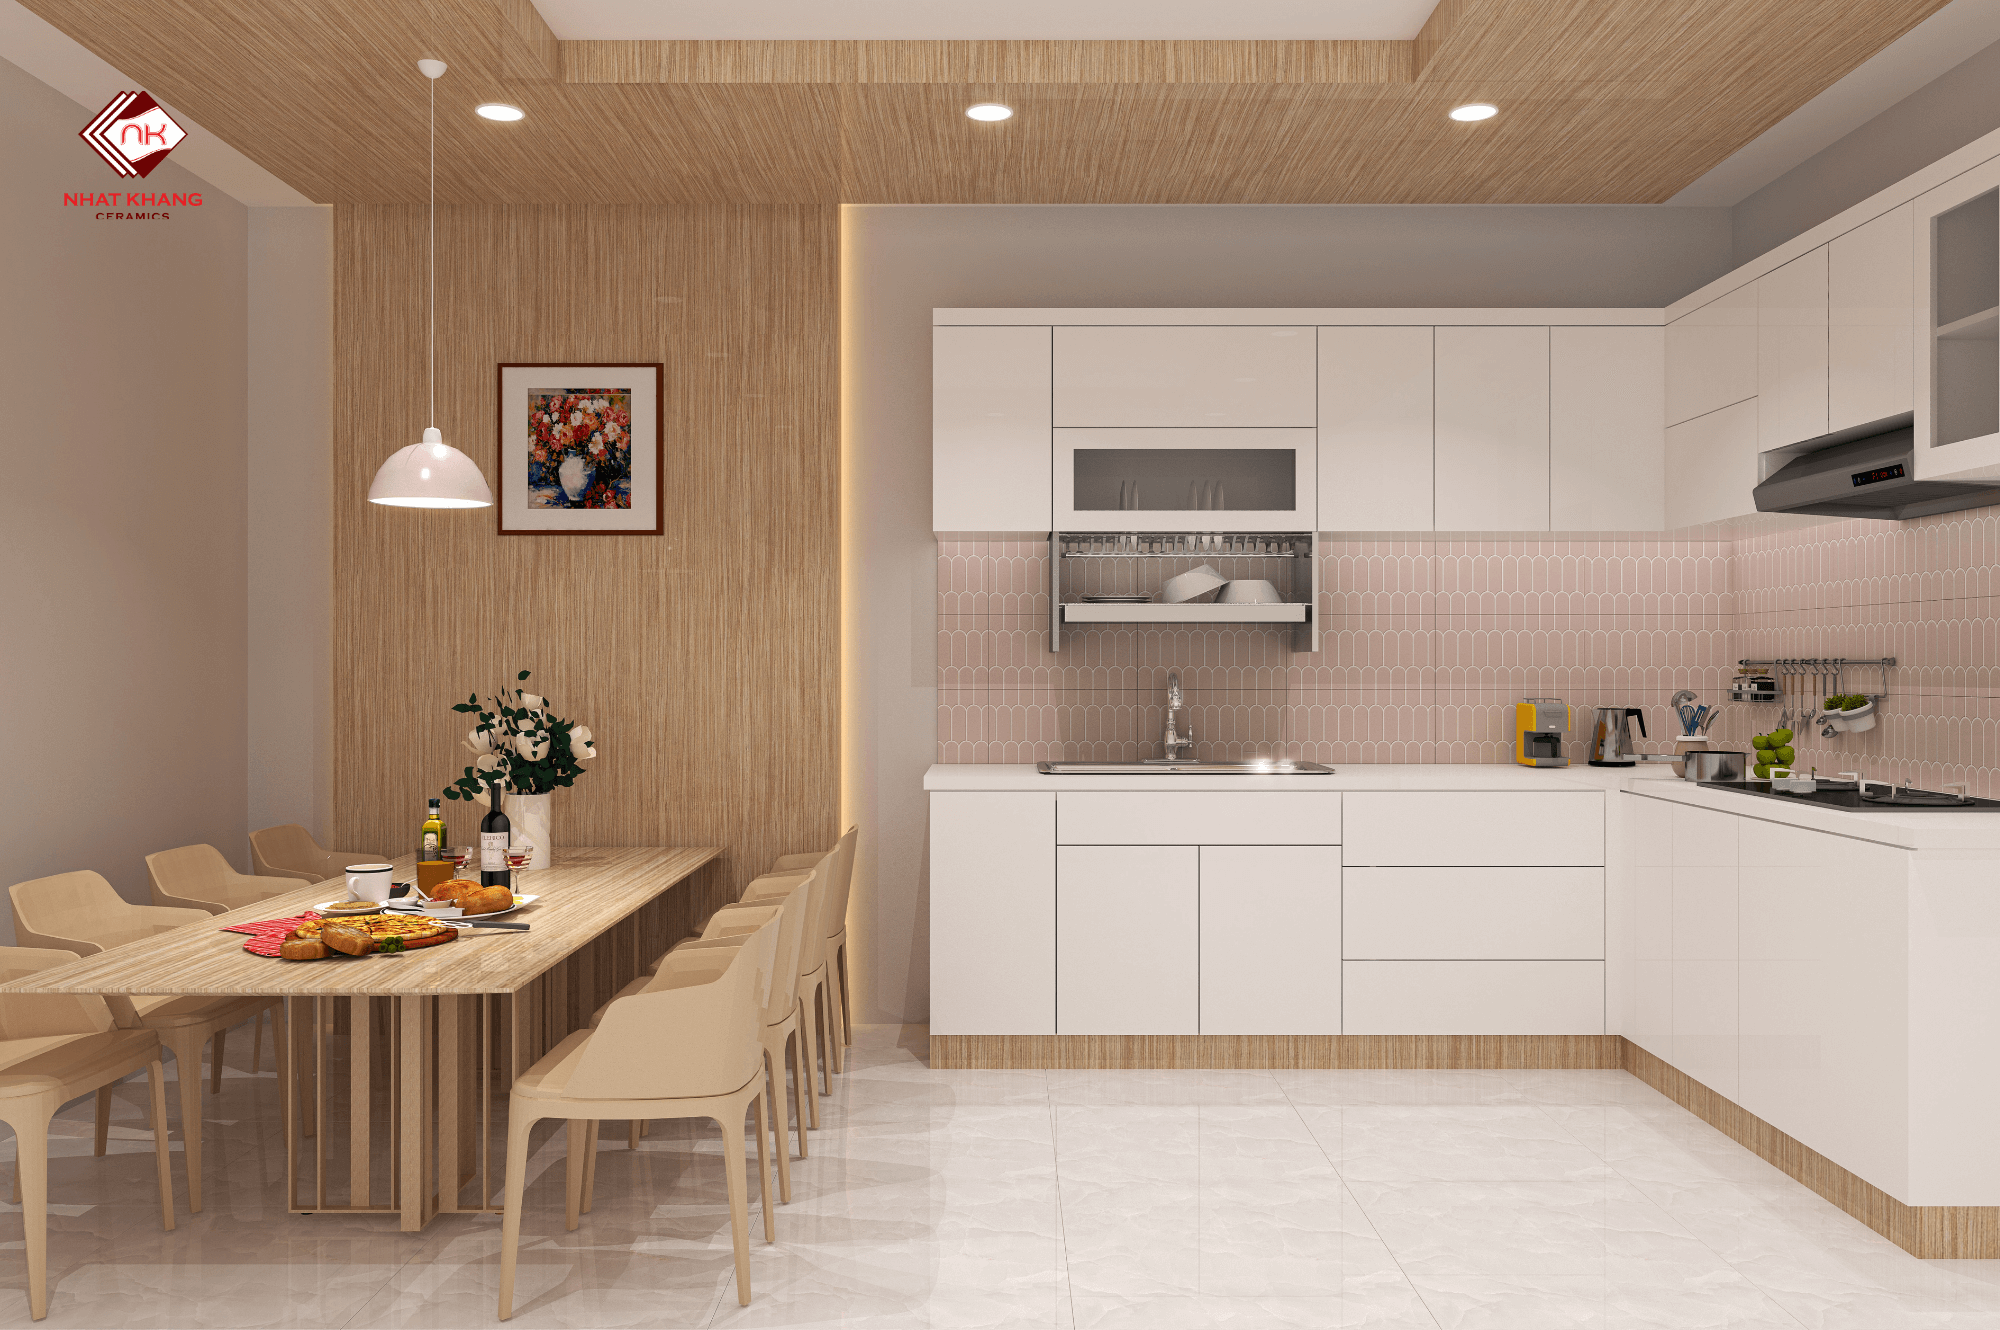 Phòng bếp - Gạch trắng góp phần tô điểm cho không gian nấu nướng thêm hiện đại, sang trọng và dễ dàng vệ sinh.